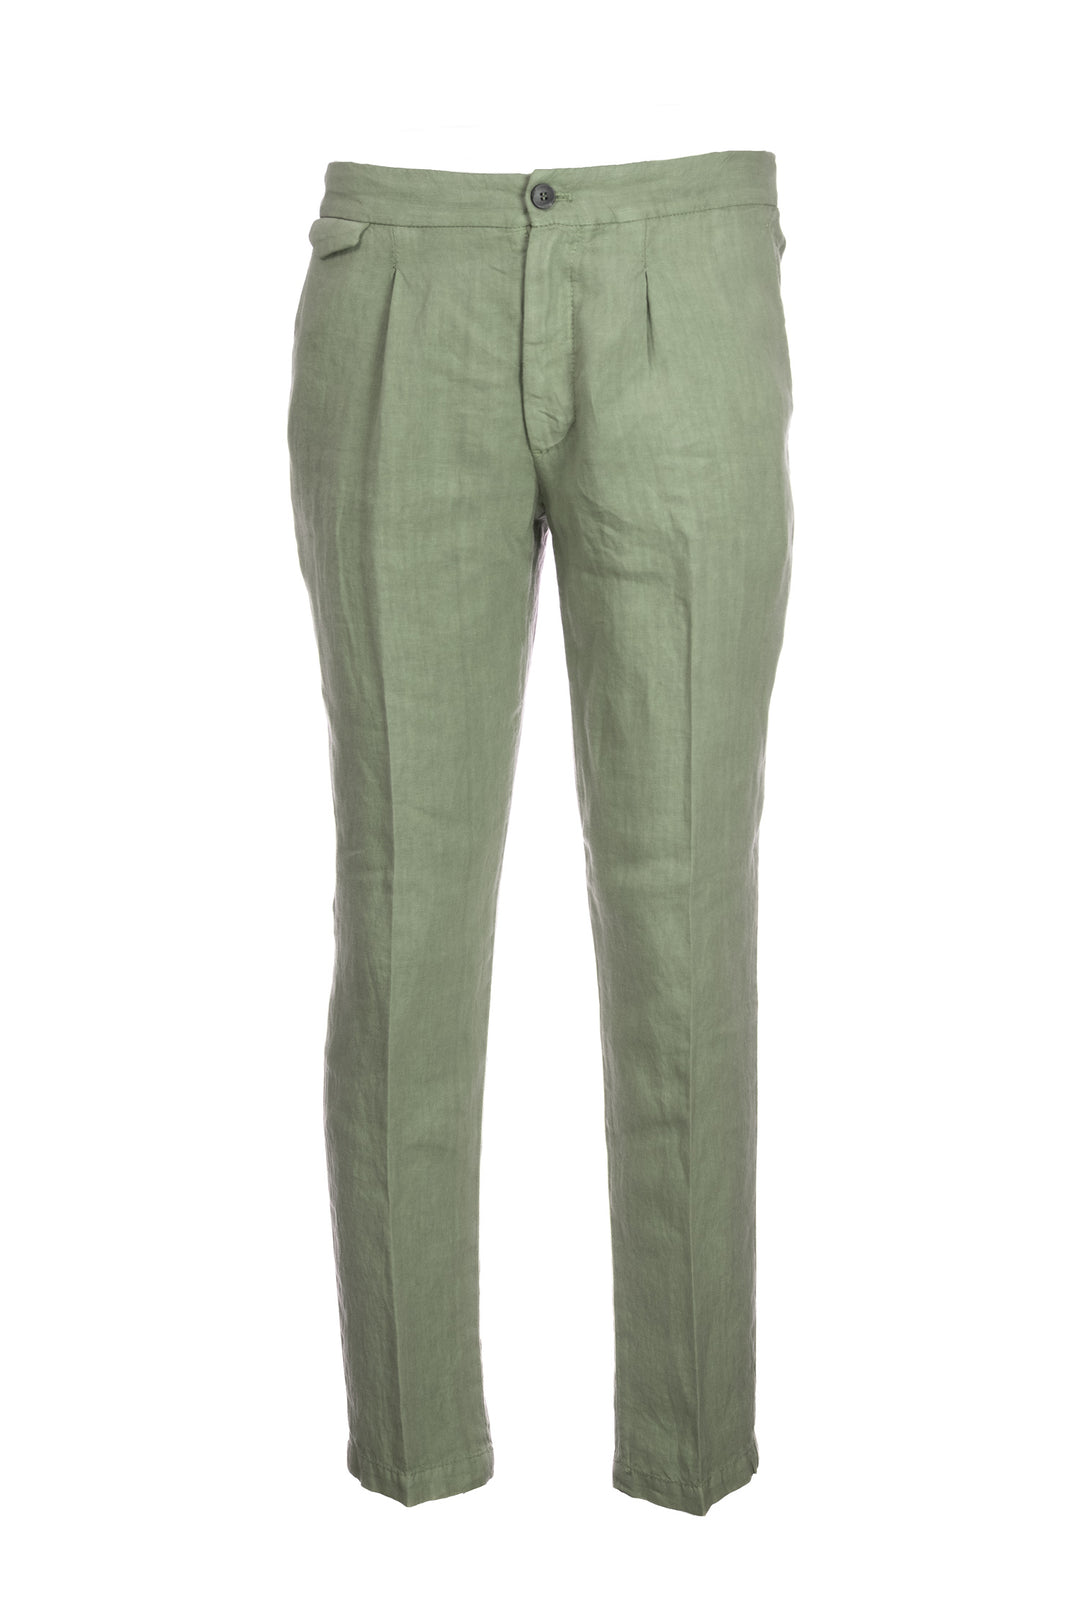 DEVORE Pantalone leggero verde militare in lino con una pence - Mancinelli 1954